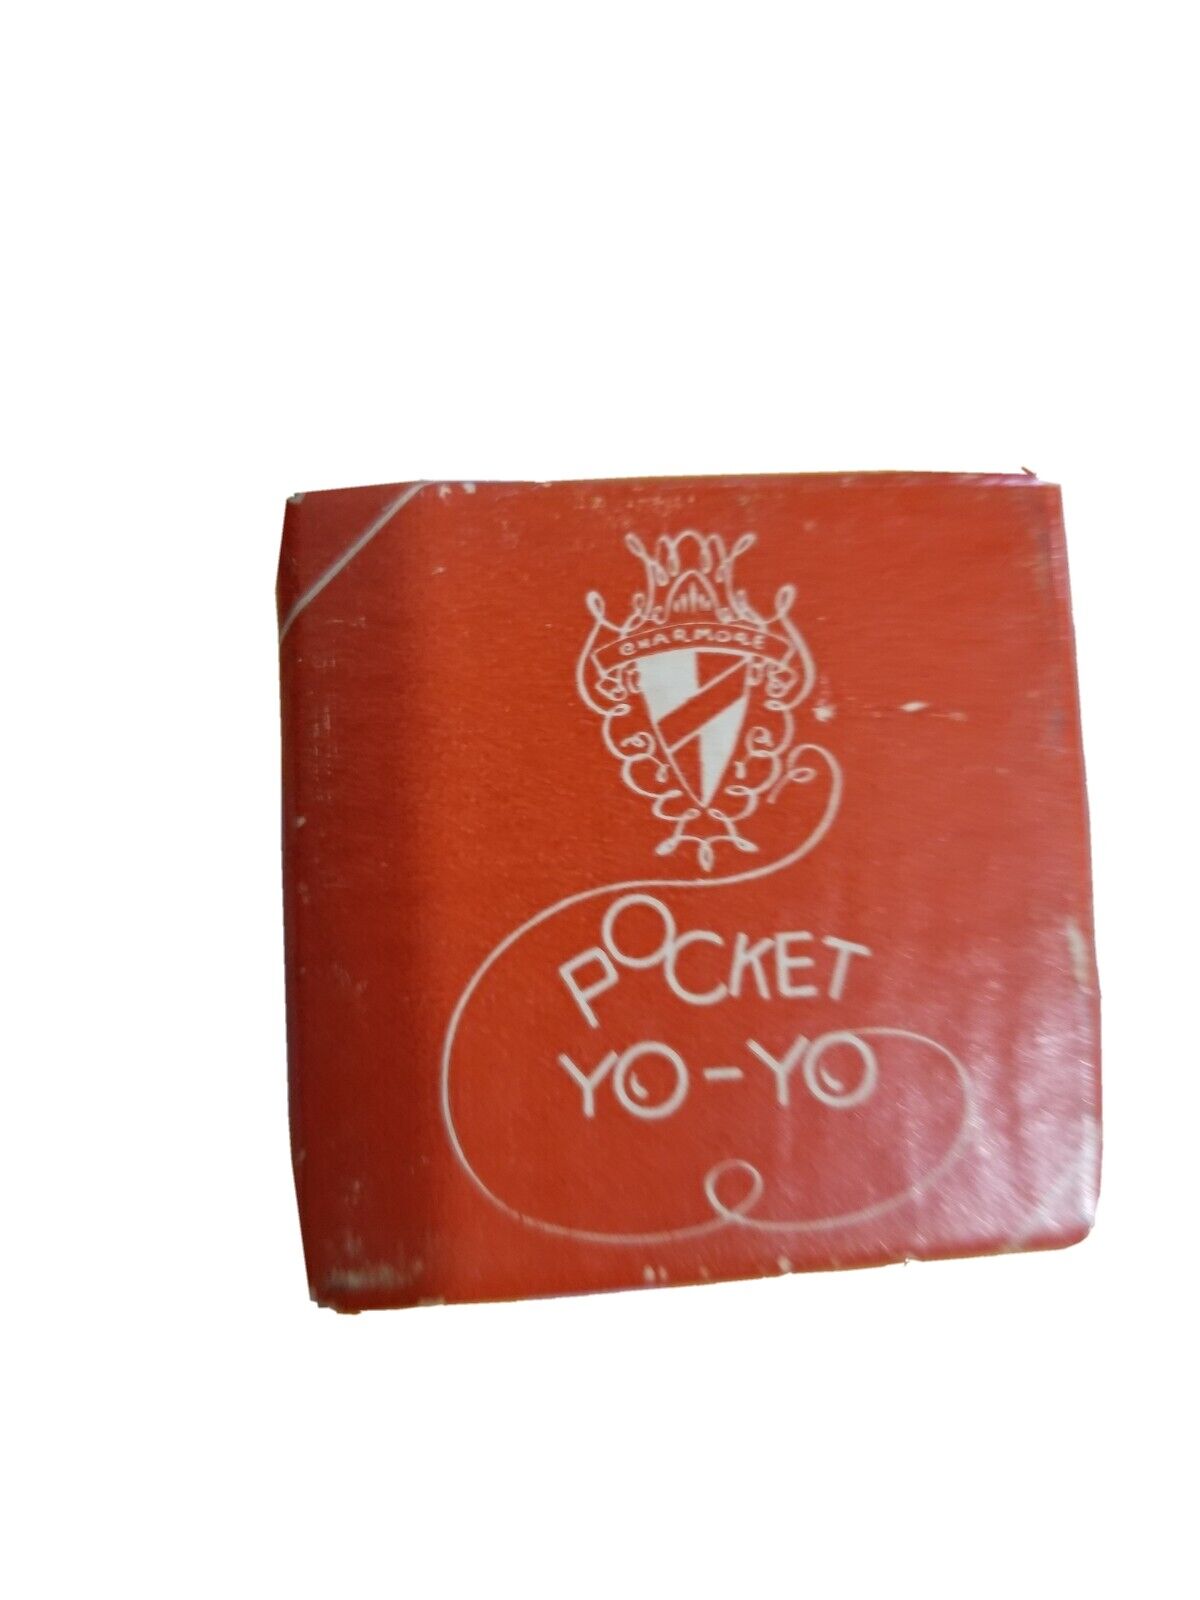 Vintage Pocket Yoyo